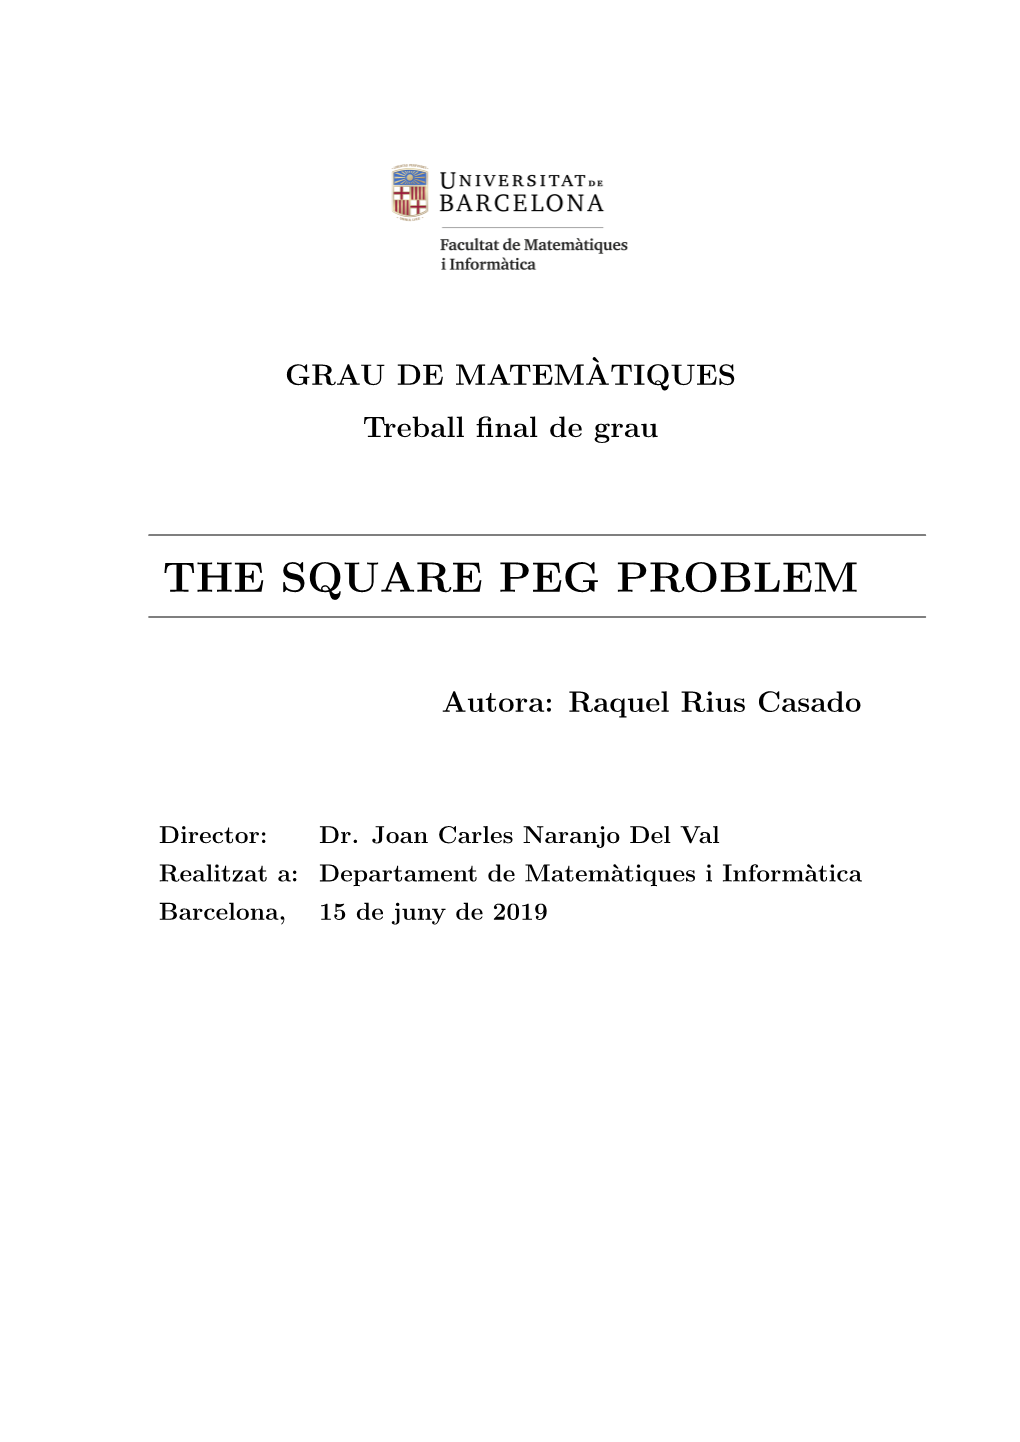 The Square Peg Problem